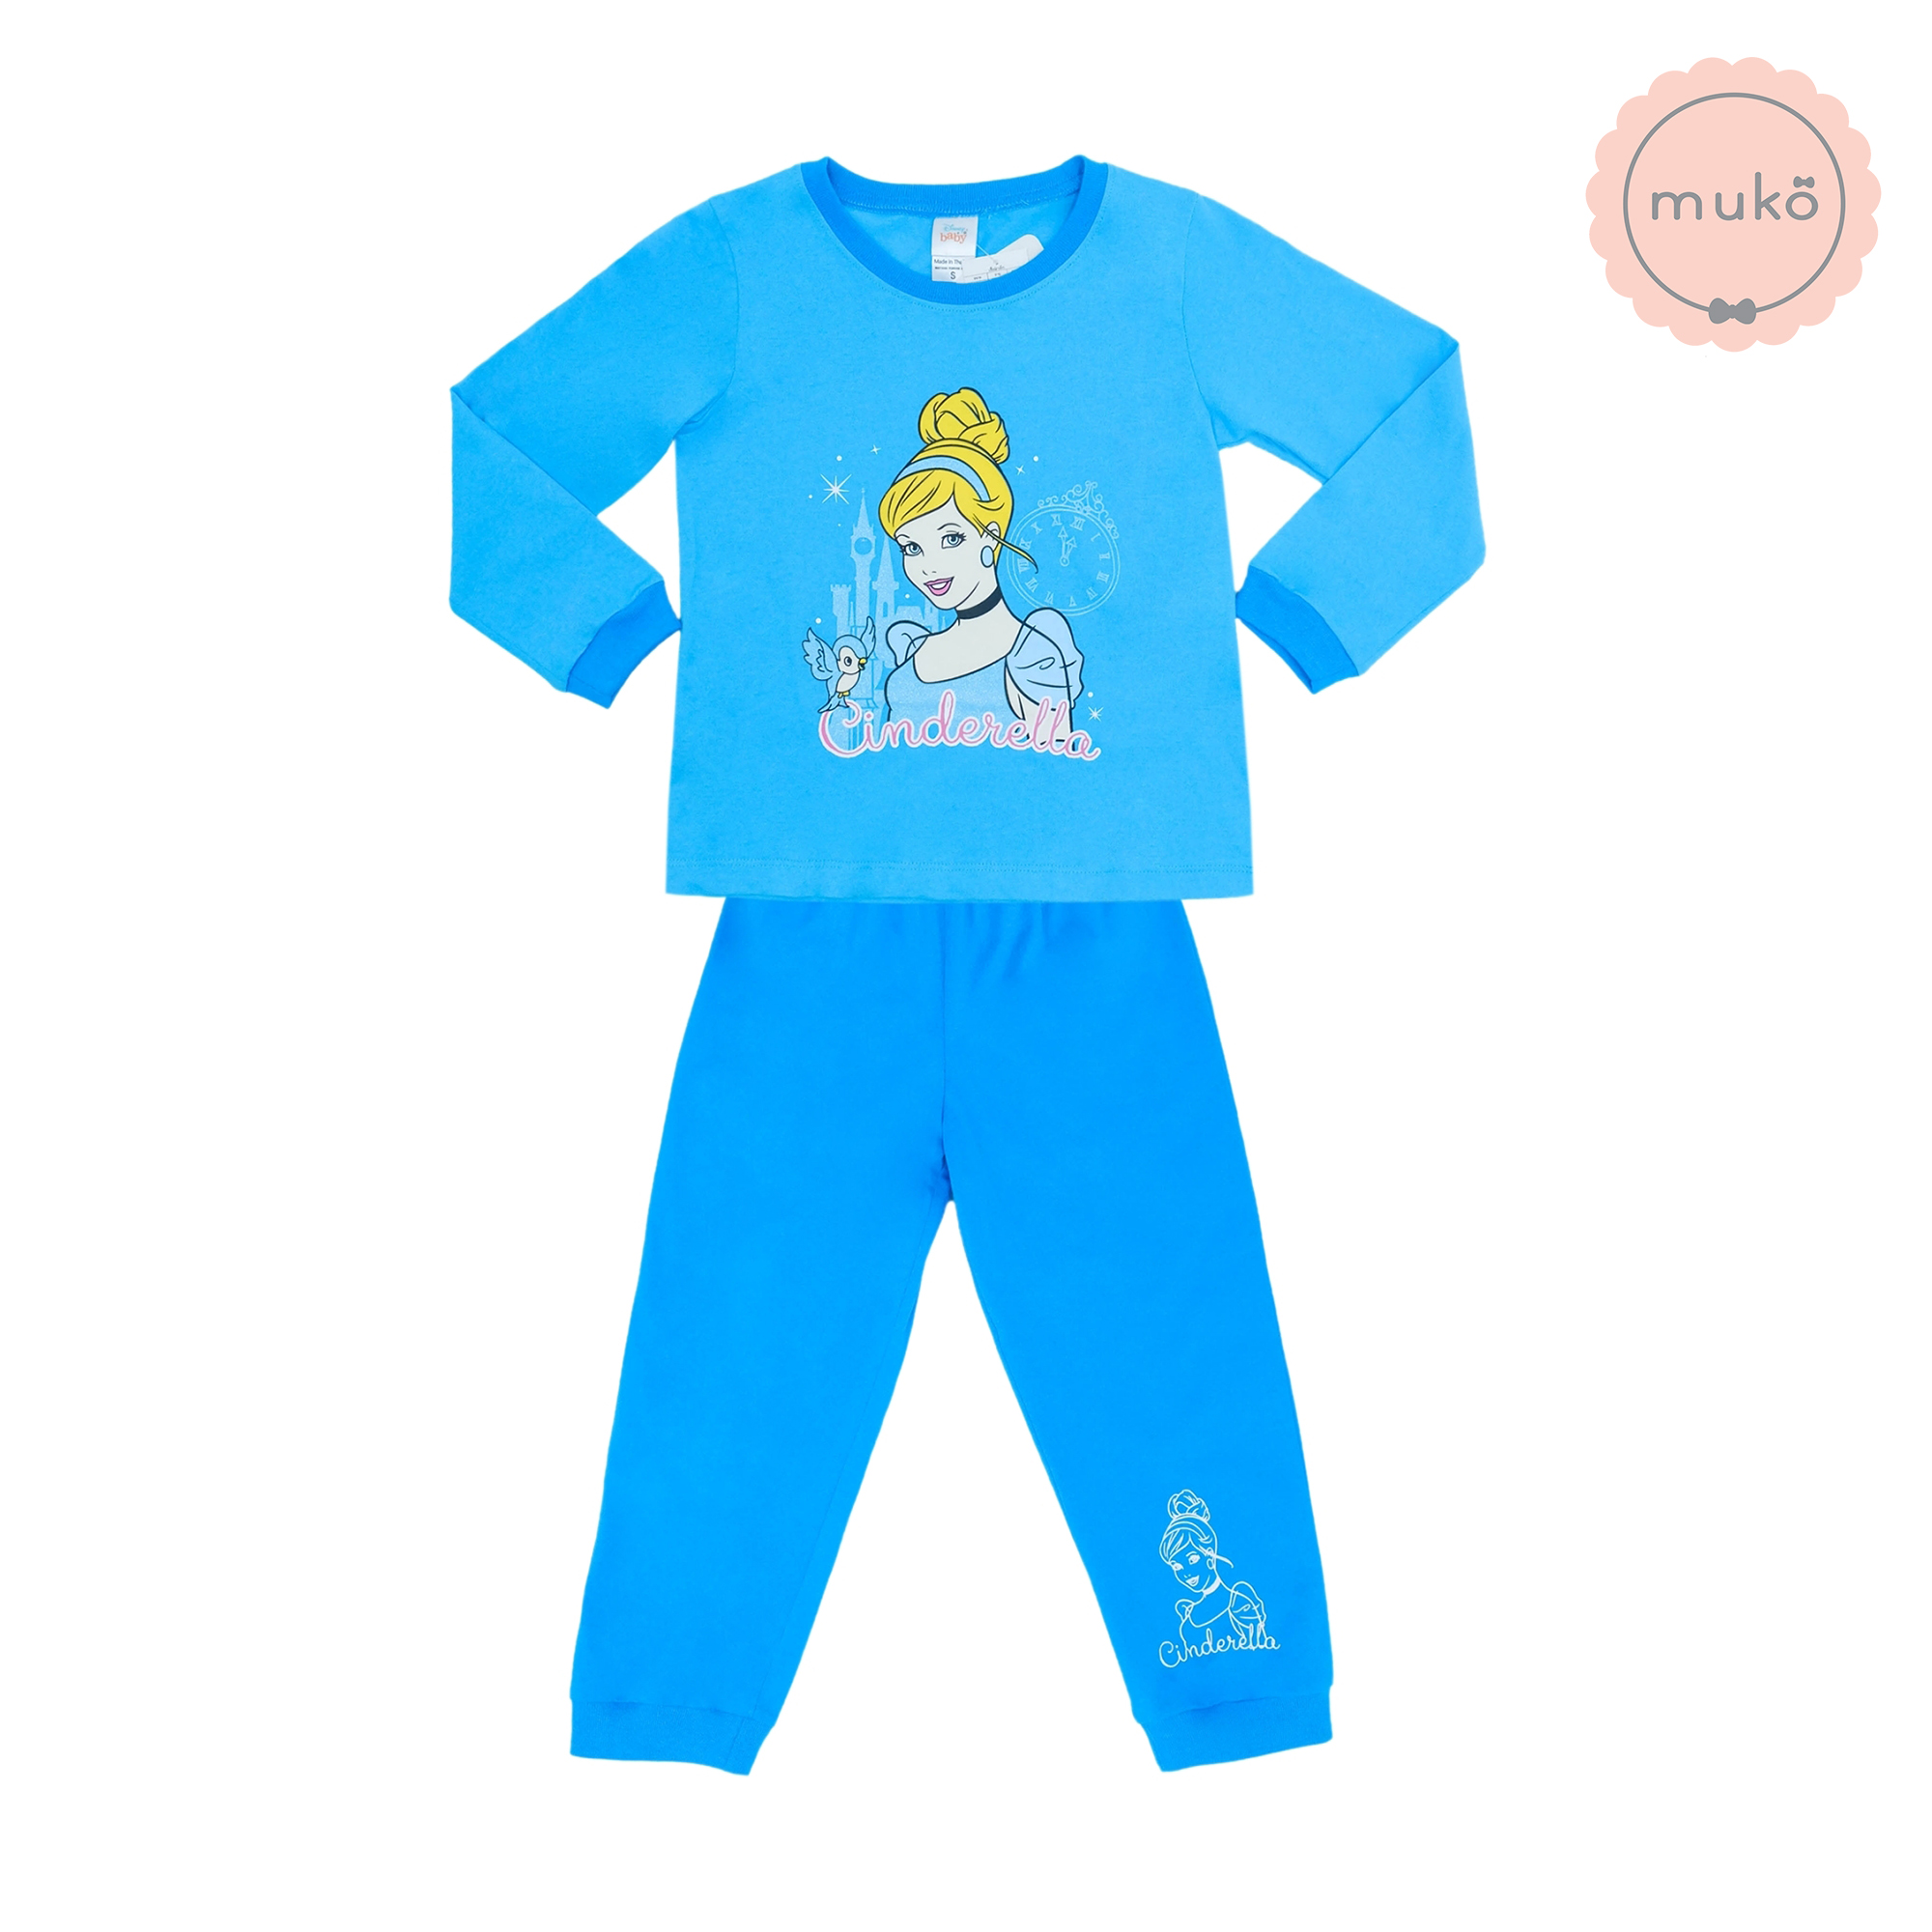 ชุดเด็ก 6-7 ขวบ แขนยาว-ขายาว (Size L) DPC127-05-XL-Blue L ลาย เจ้าหญิงซินเดอเรลล่า Cinderella สีฟ้า (เจ้าหญิงและนกน้อย)